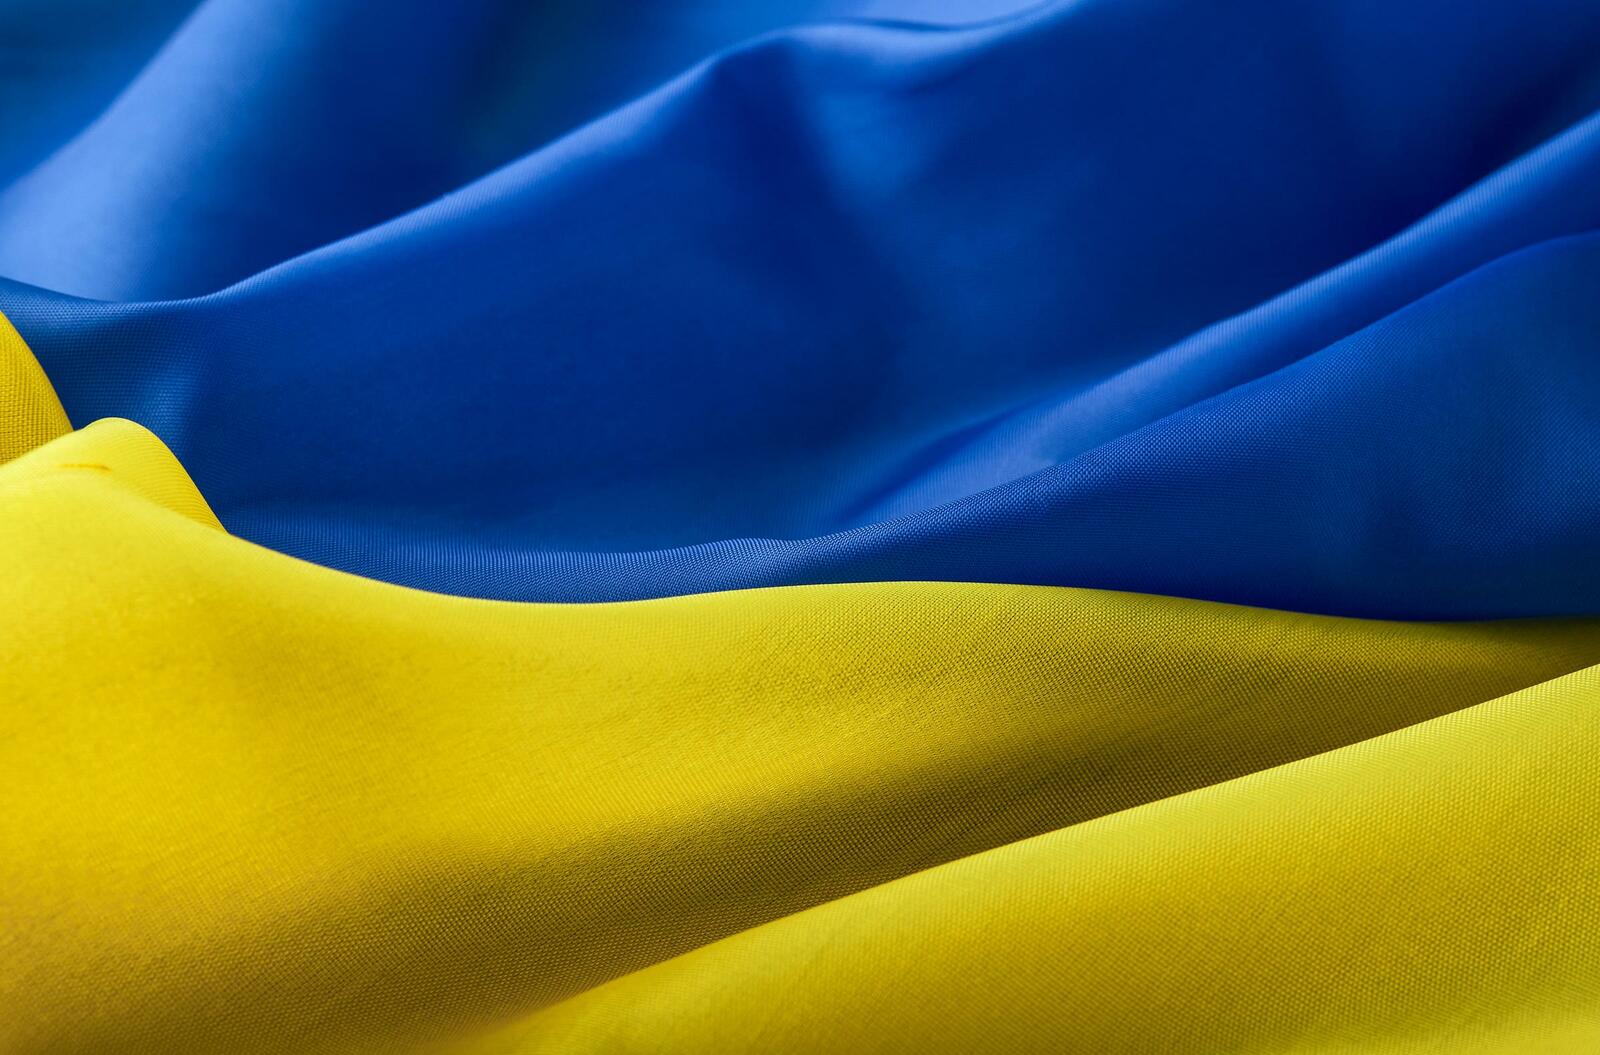 Informationen für Unternehmen zum Ukraine-Krieg liefert die Initiative #WirtschaftHilft.